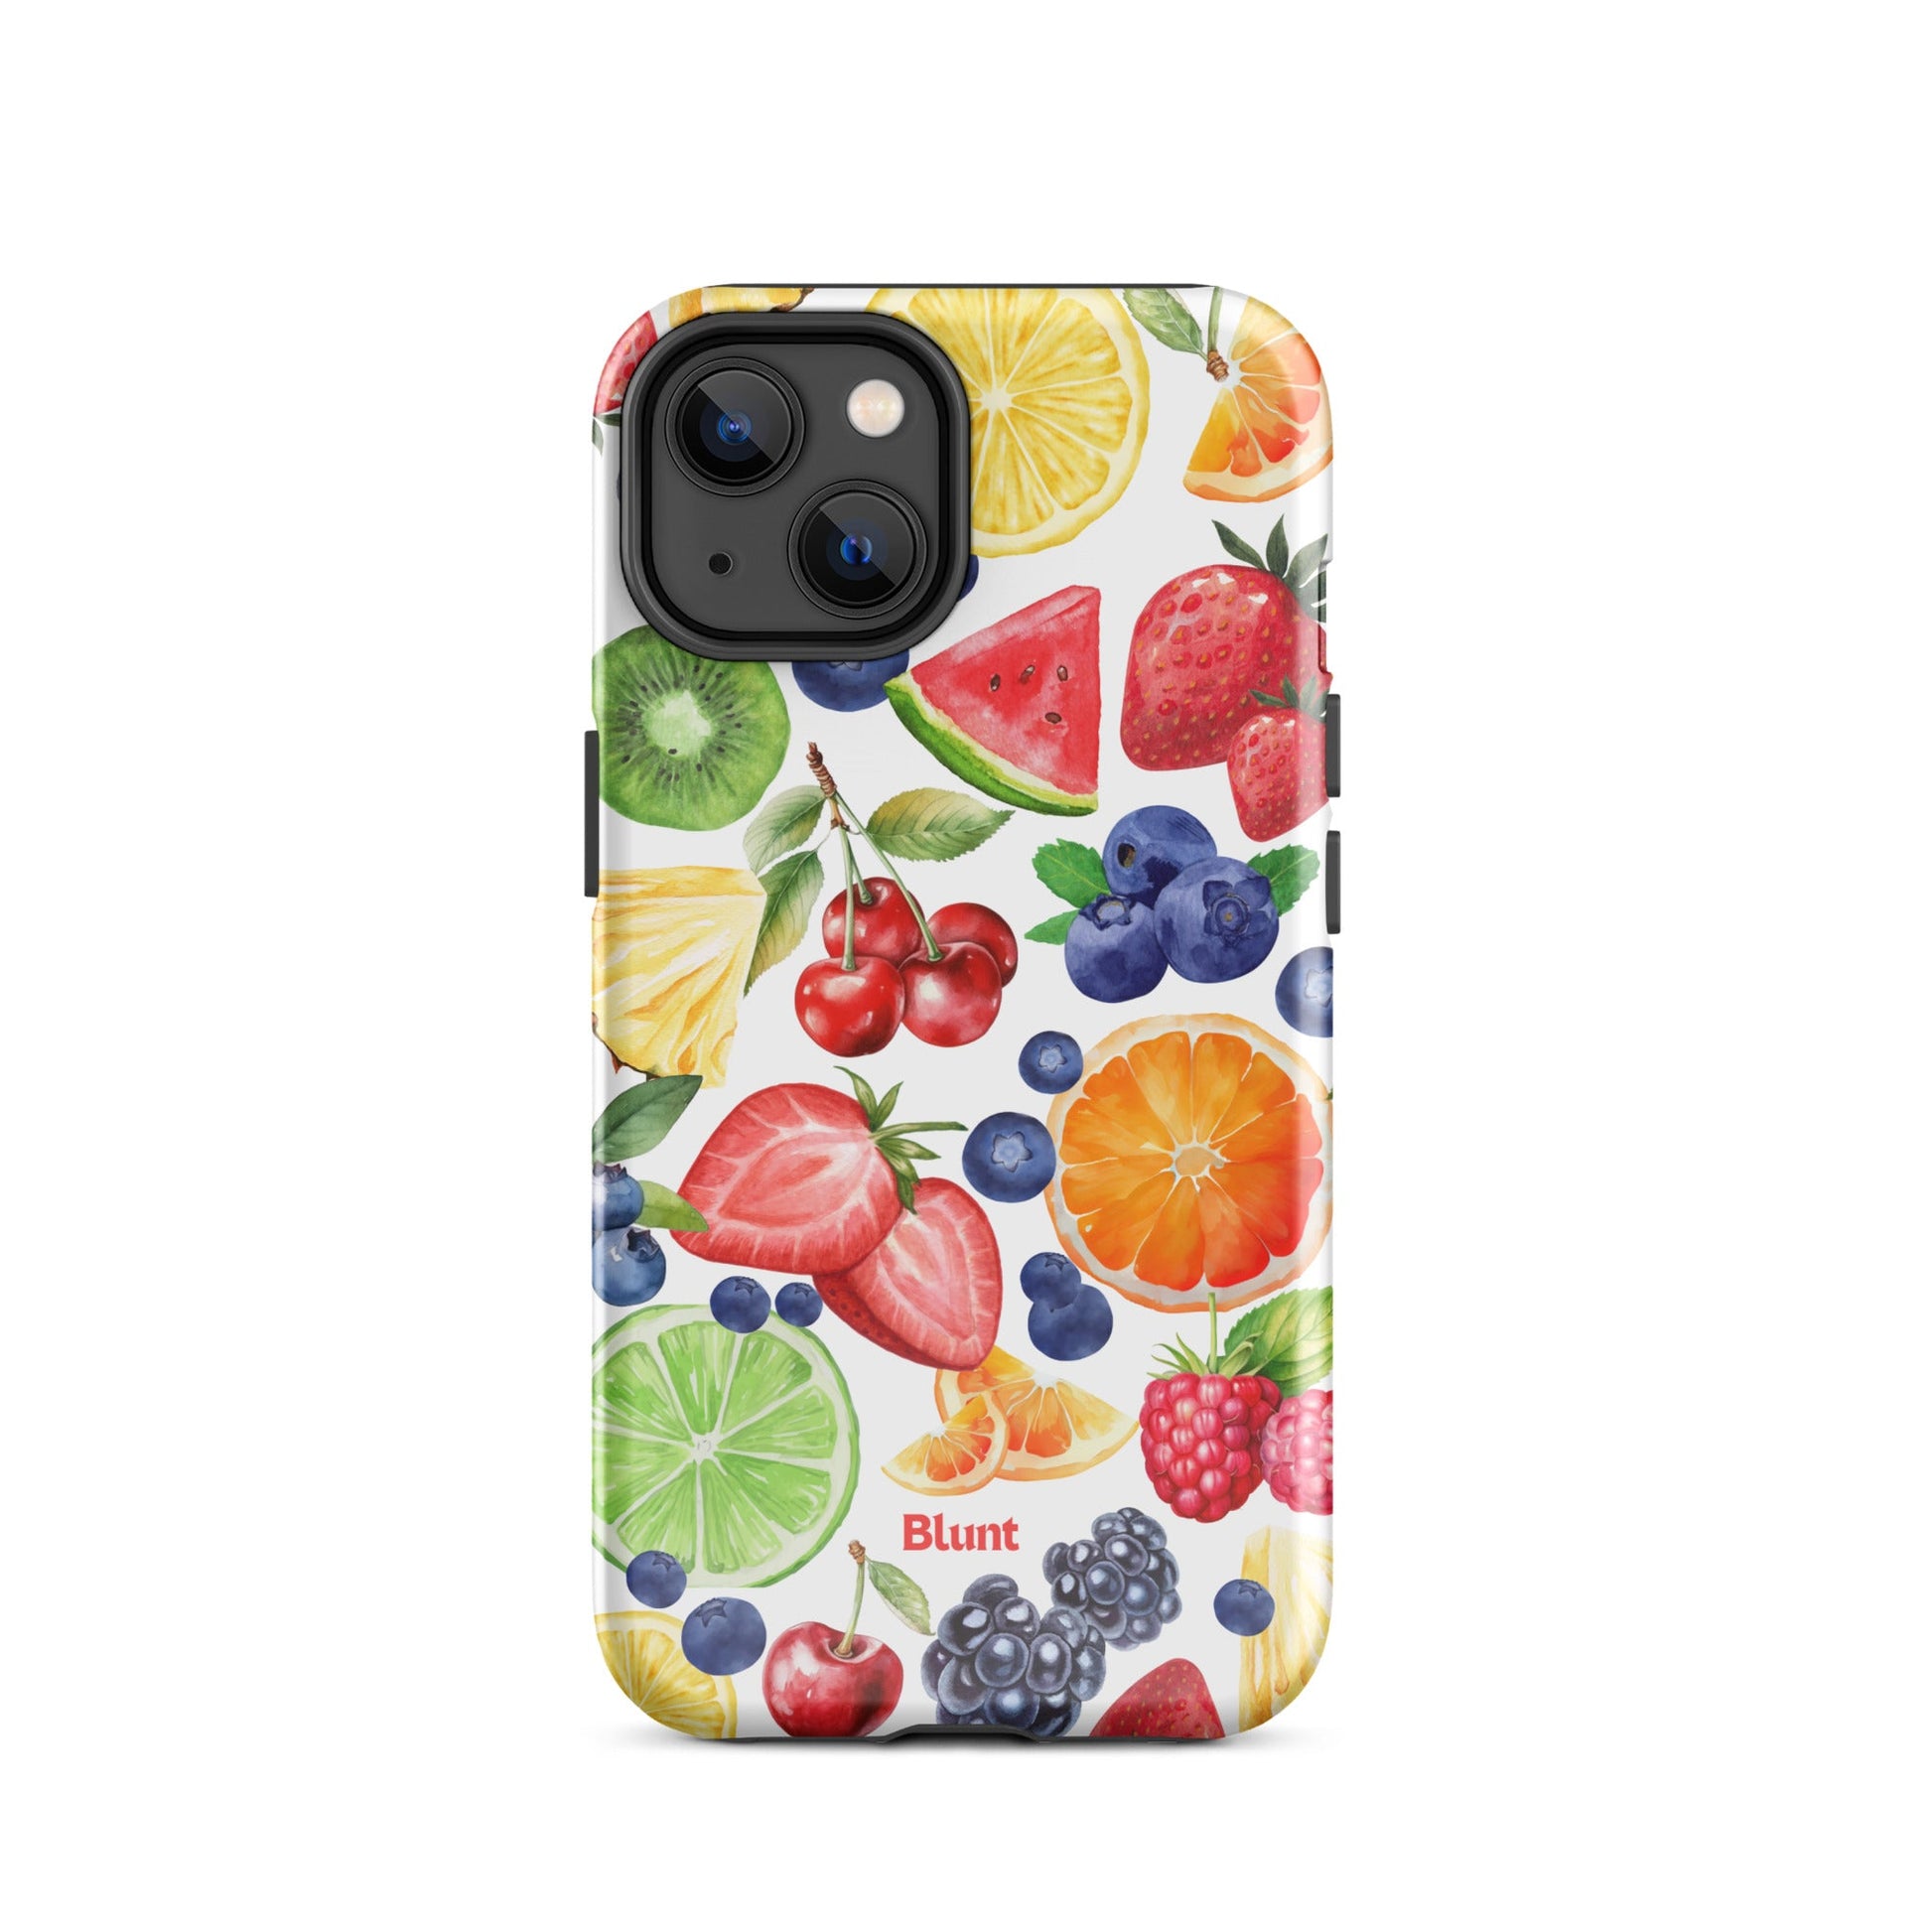 Fruit Salad iPhone Case - blunt cases